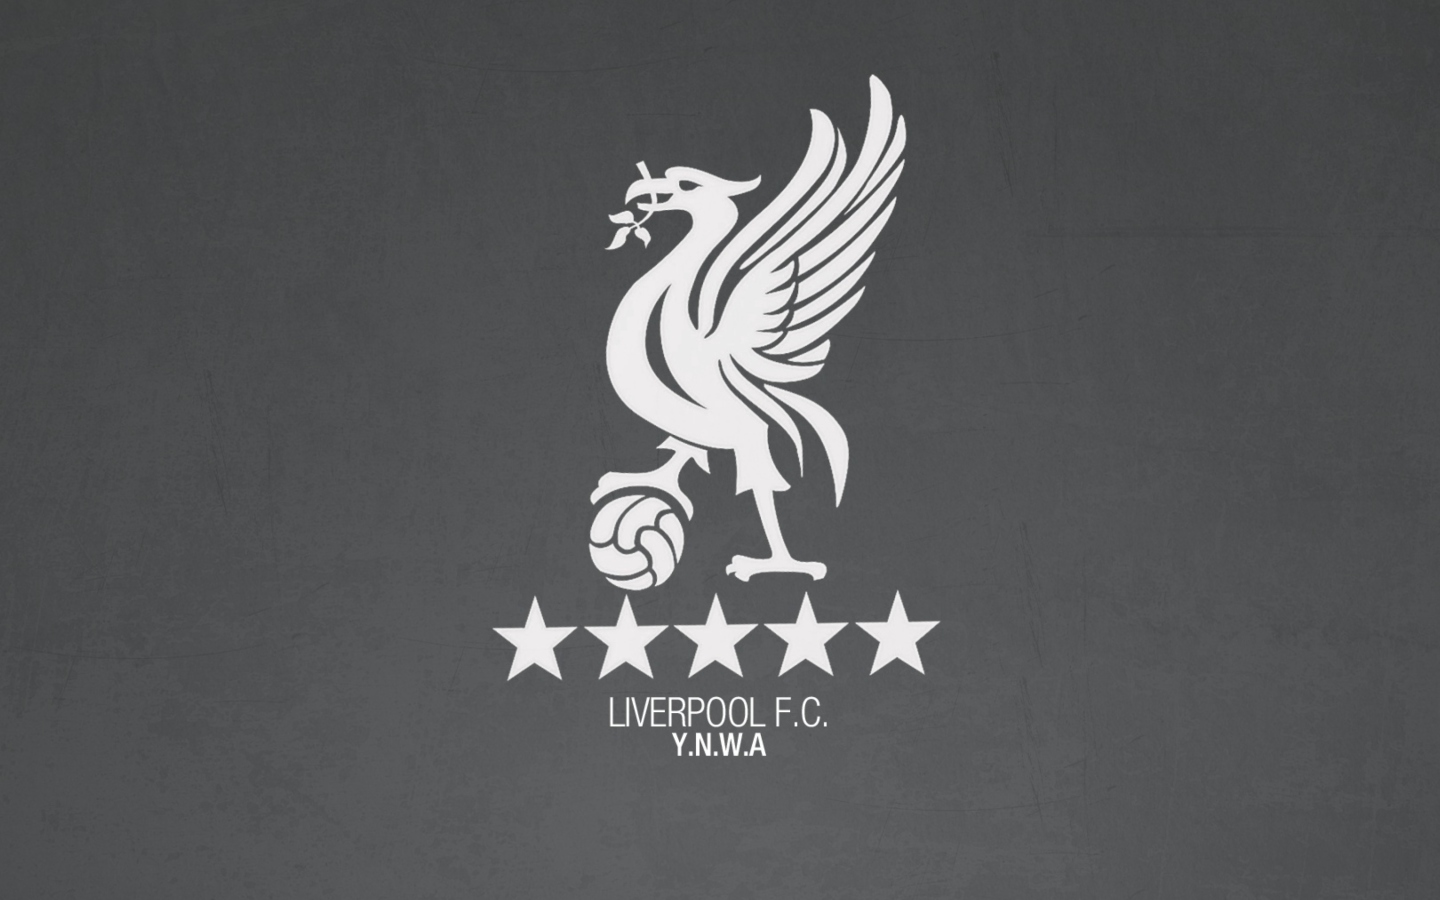 Liverpool Fc Ynwa wallpaper 1440x900